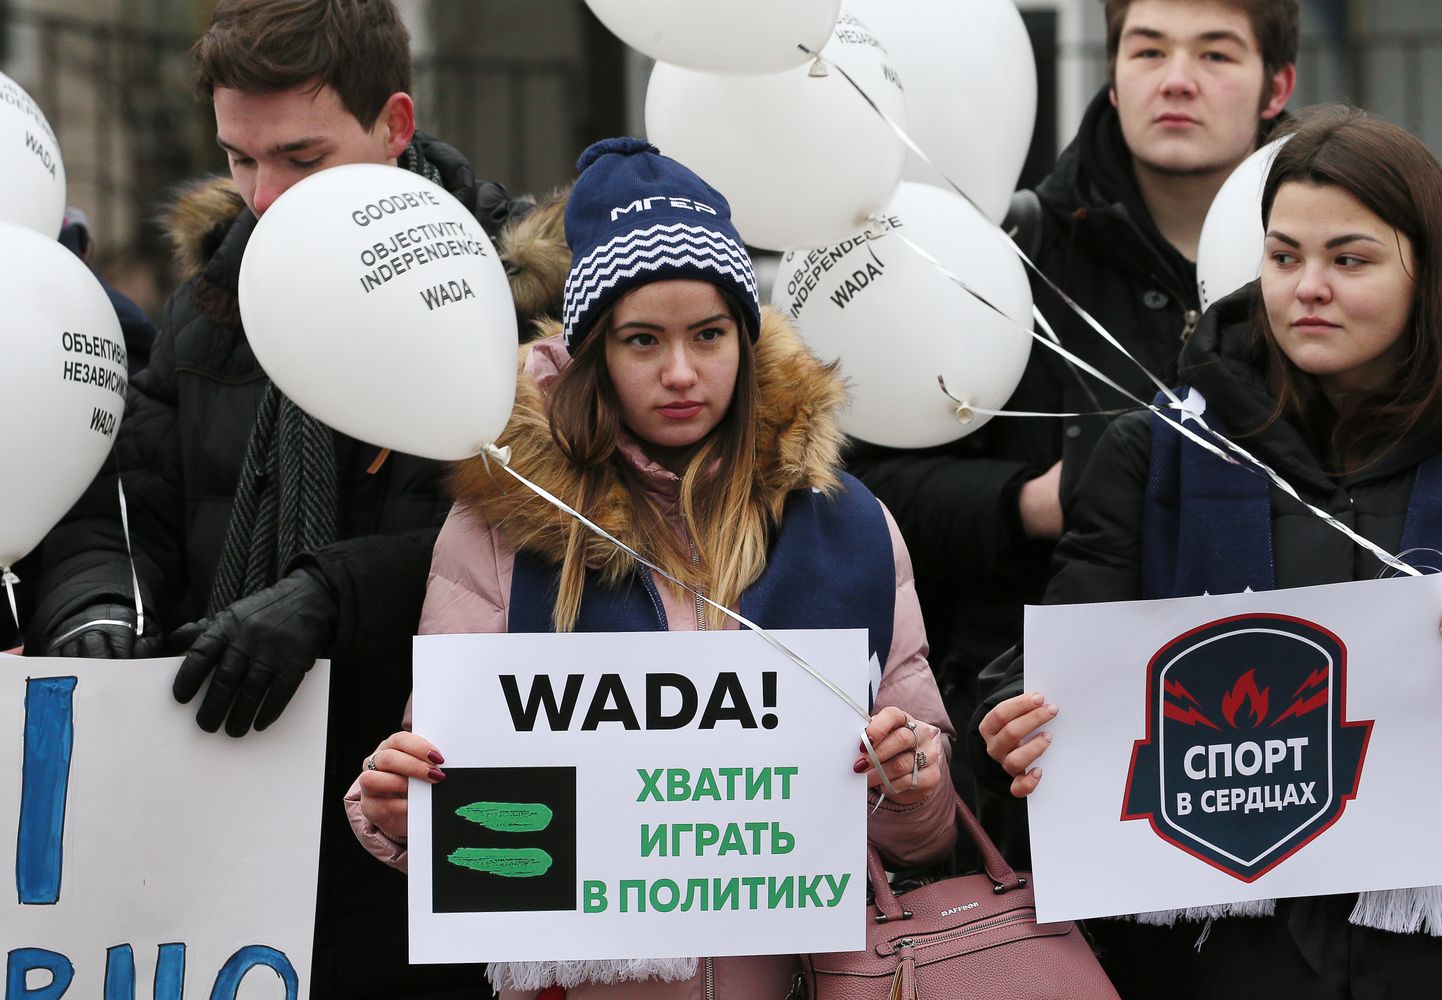 Maailma kõrgeim spordikohus peab otsustama, kas kinnitada WADA läinud kuul Venemaale kehtestatud nelja-aastane keeld või kaaluda Venemaa vastulauset sellele eepilisele meetmele.